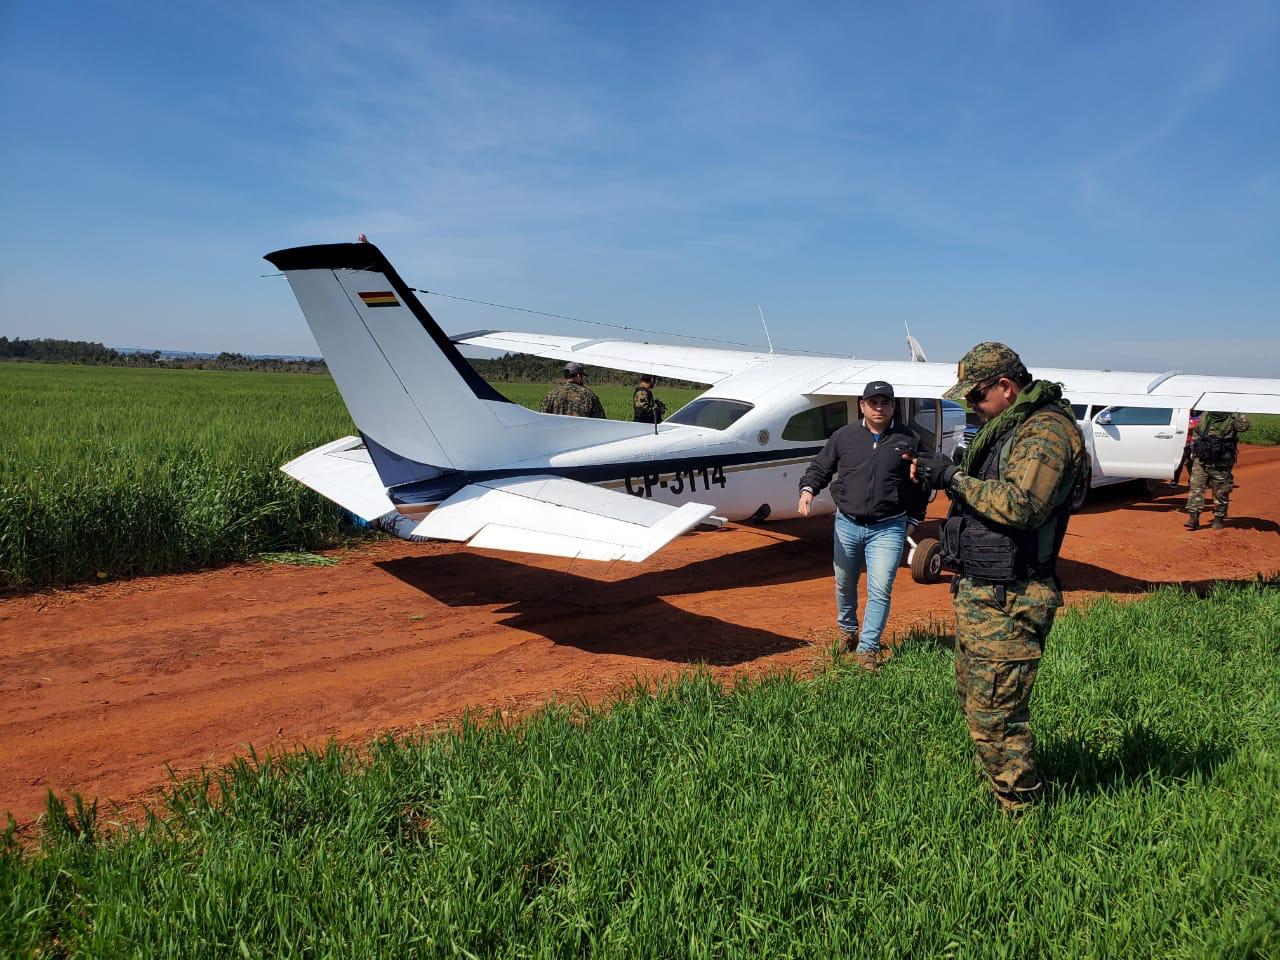 La avioneta fue localizada en un camino rural del distrito de Santa Fe del Paraná. 
 
 
Tema: Cae narco avion  
Lugar: Santa Fe del Paraná  
Autor: Gentilez